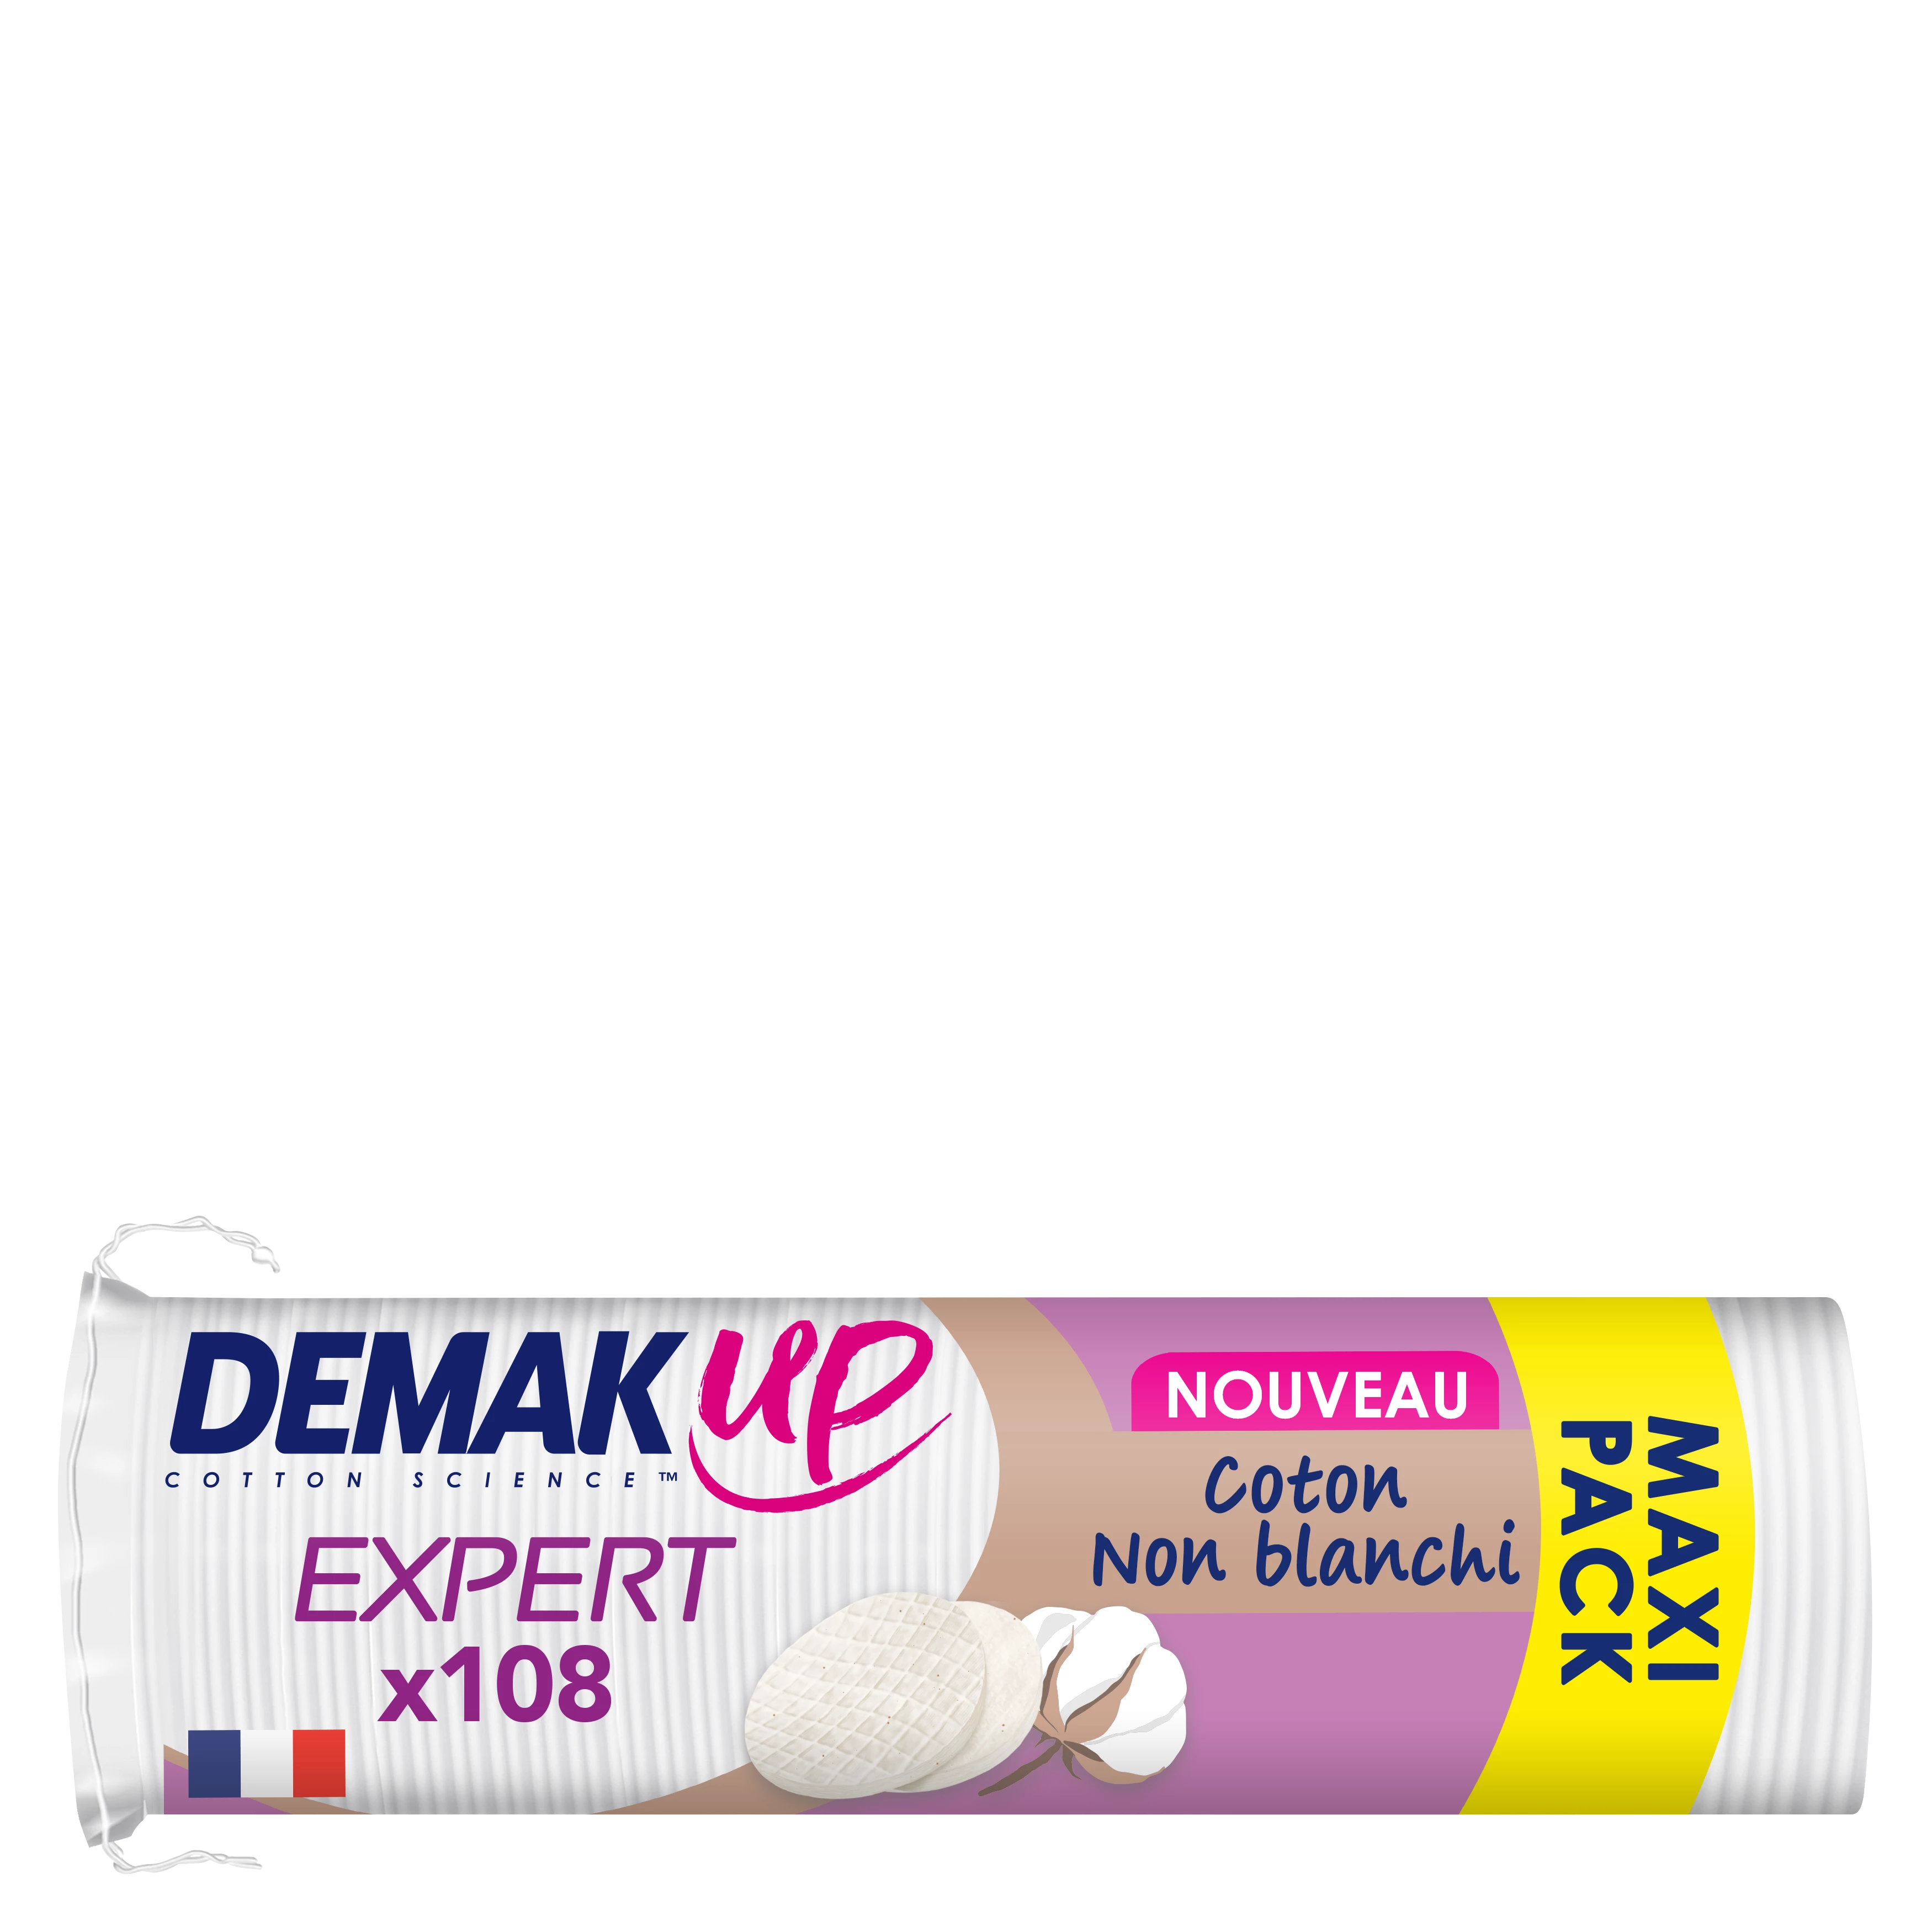 Miếng tẩy trang Demakup Expert X108